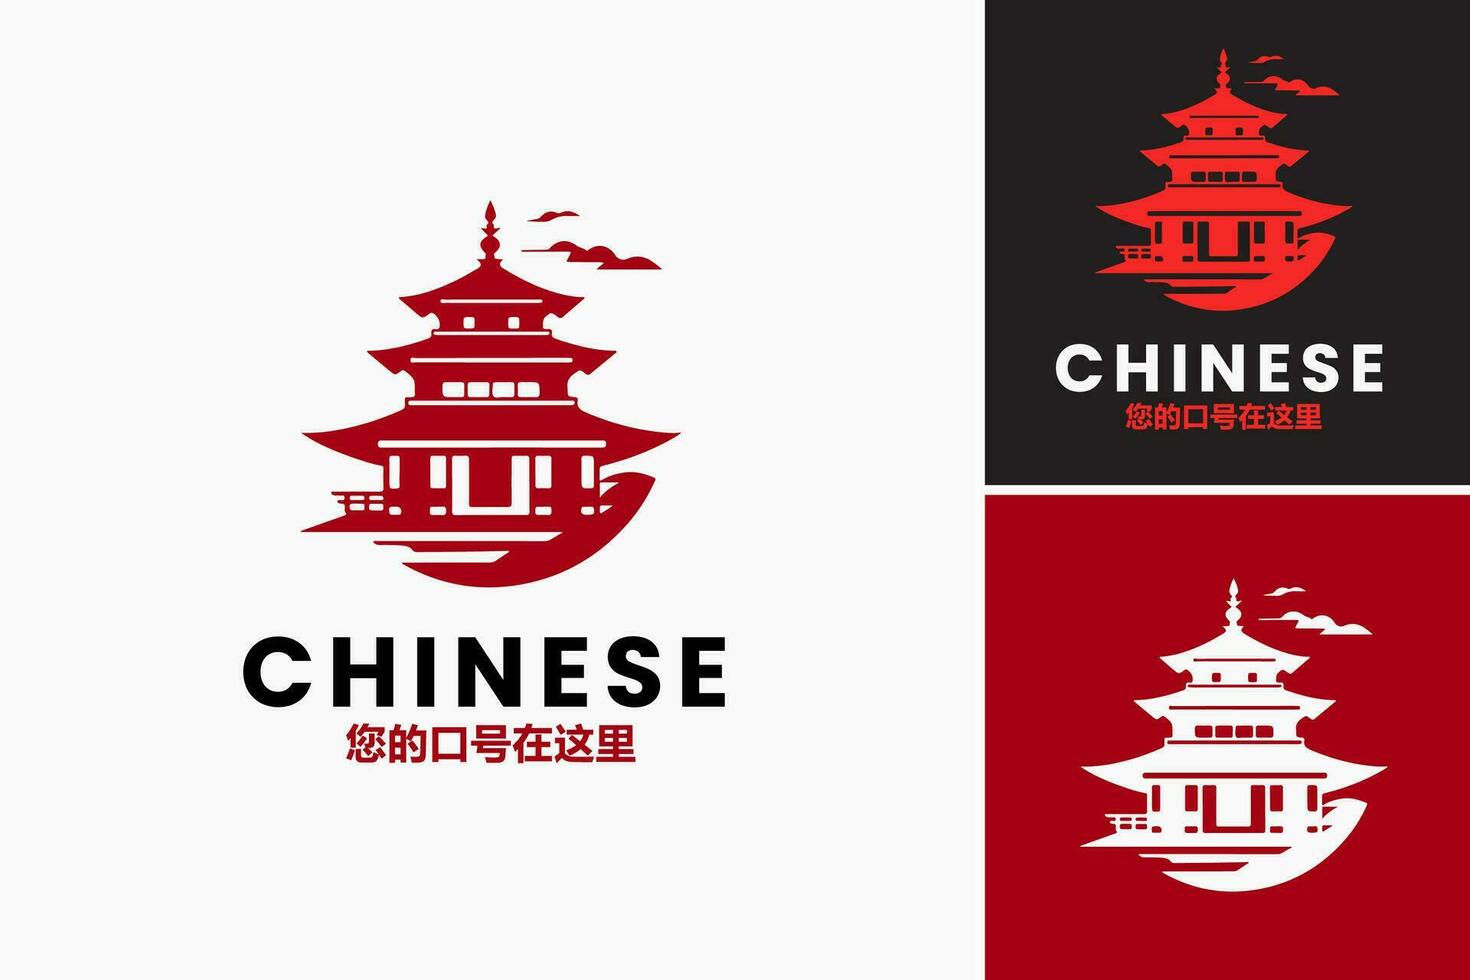 Chinese gebouw logo ontwerp specifiek gemaakt voor Chinese restaurants. het is geschikt voor branding, afzet materialen, en bewegwijzering voor Chinese voedsel vestigingen. vector